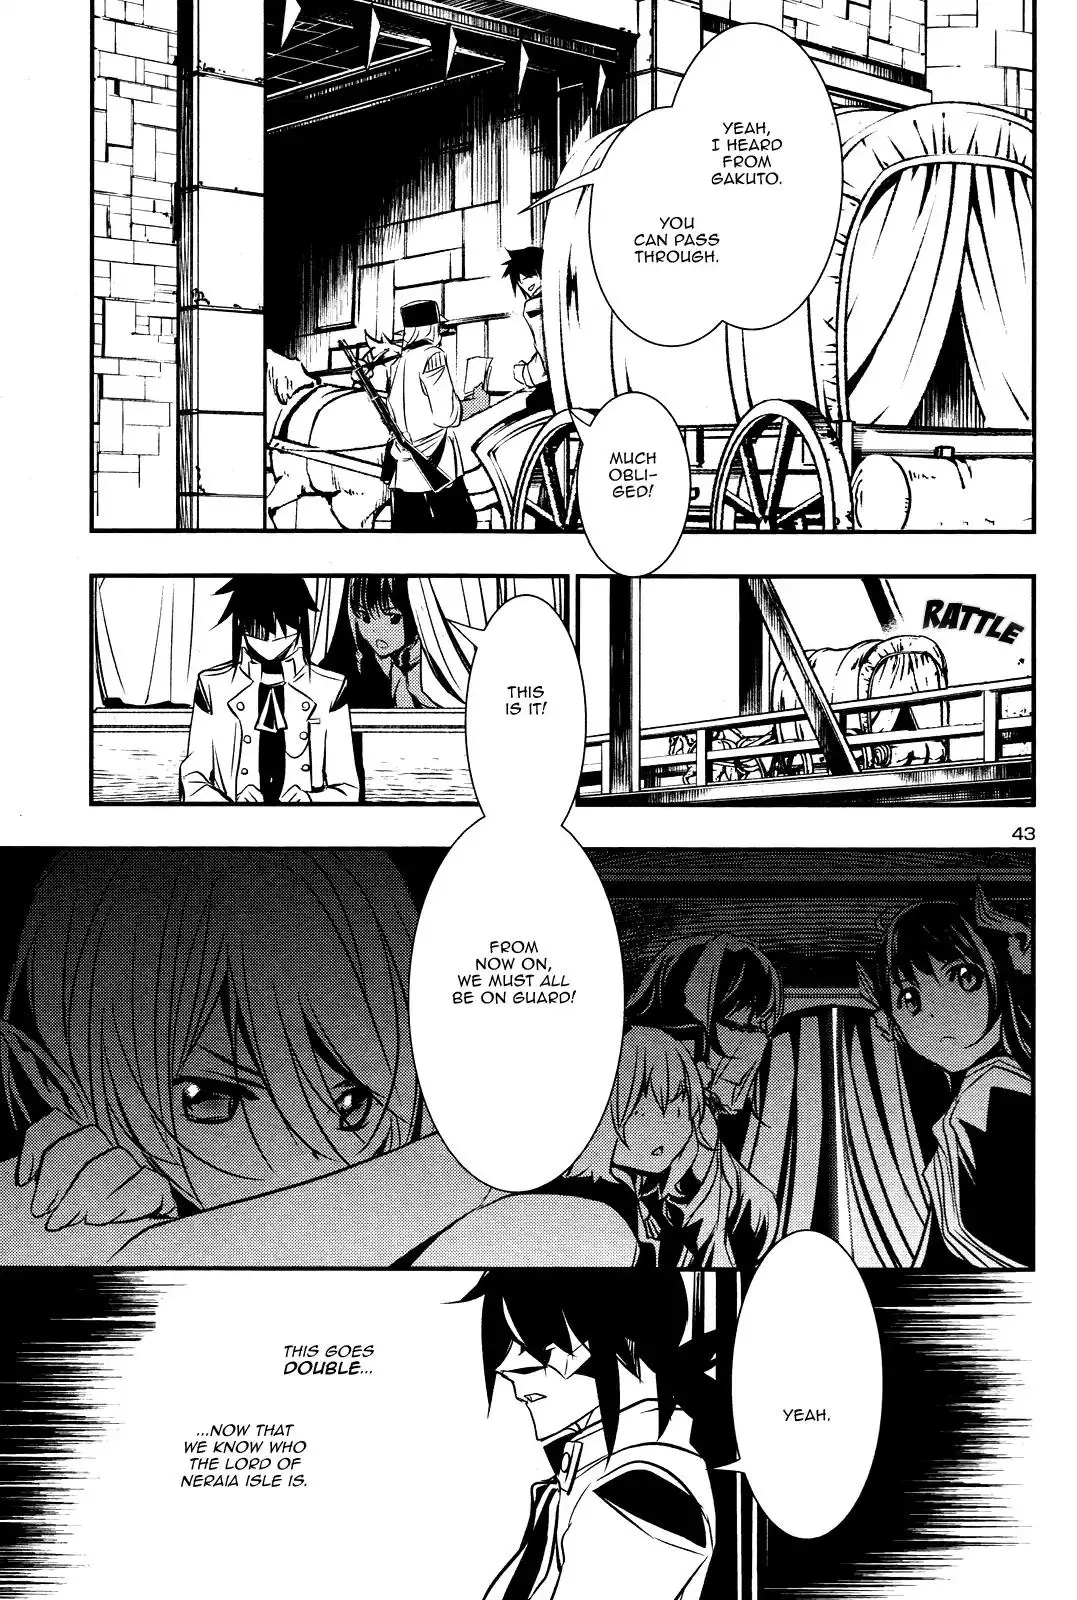 Shinju no Nectar - 14 page 42